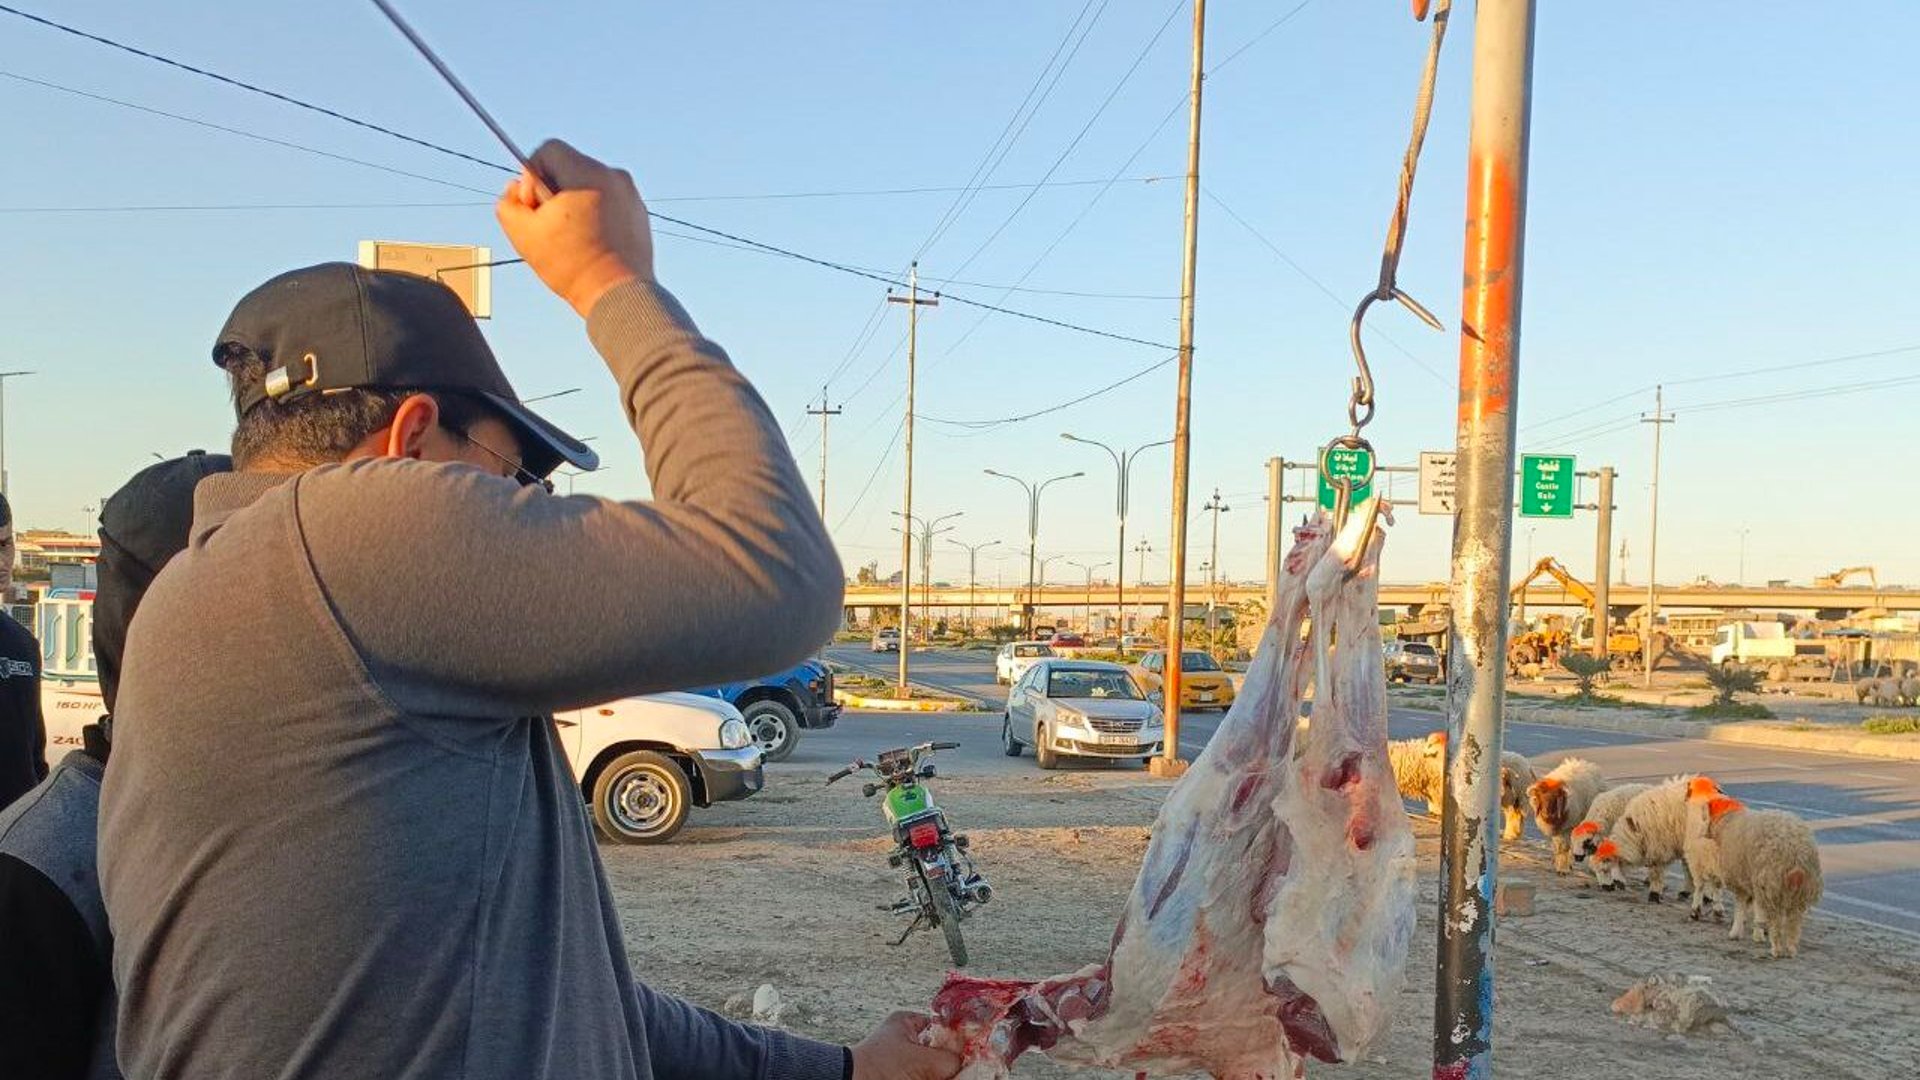 صور: كركوك حددت سعر اللحوم ولم يلتزم أحد إلا الجزارة العشوائية في الكورنيش!